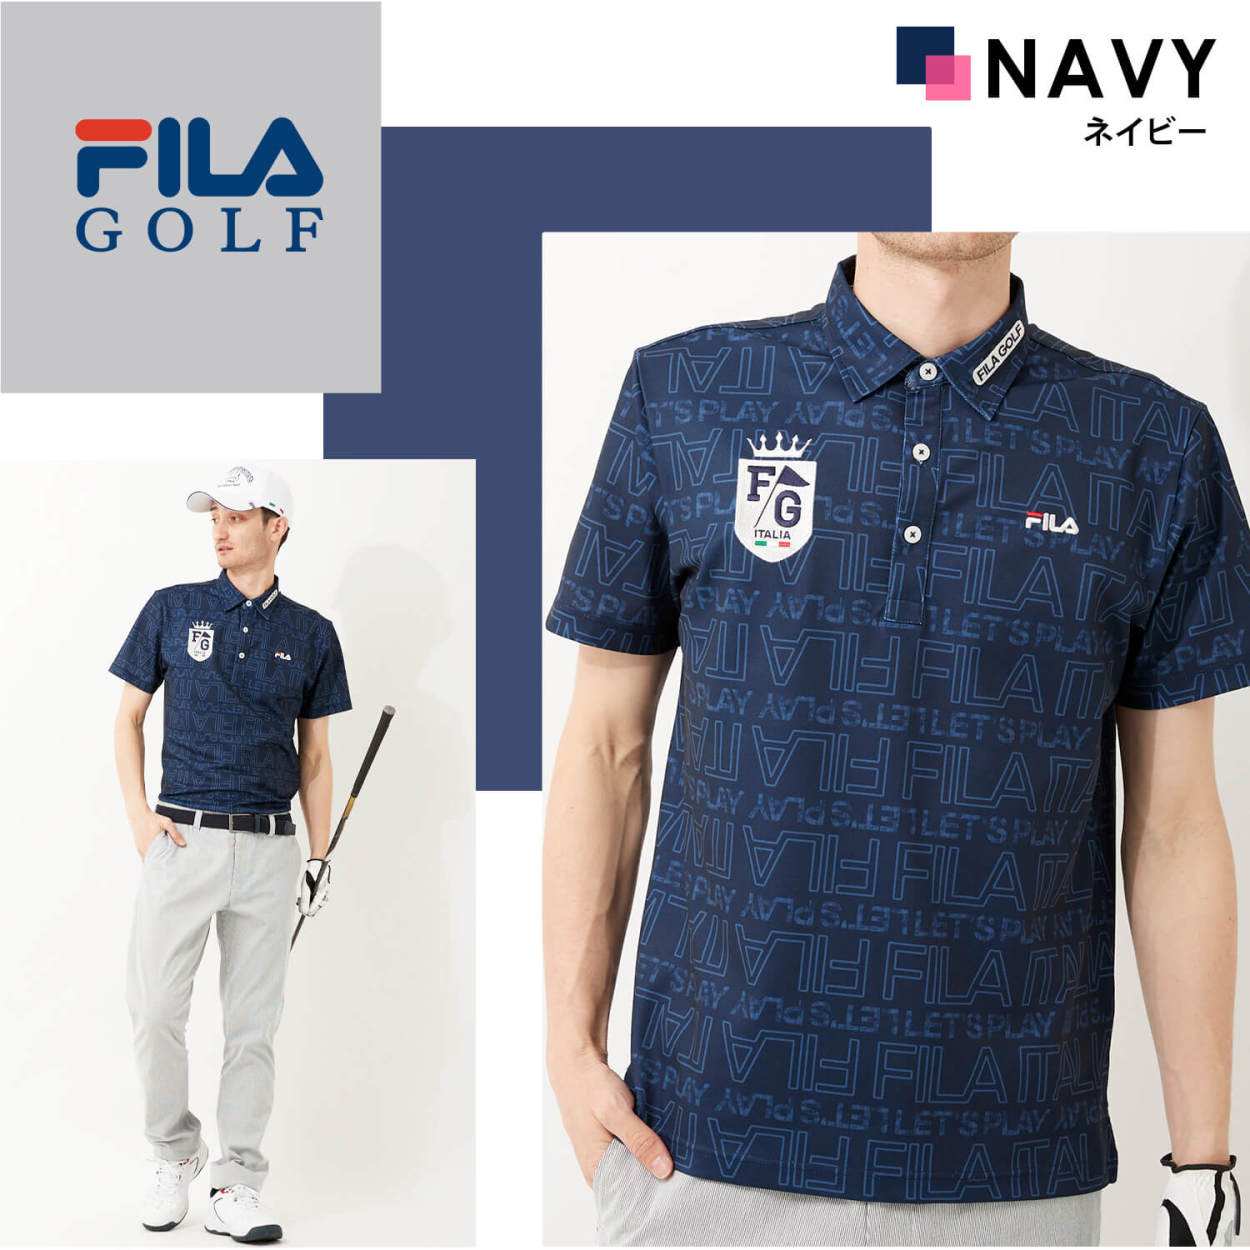 一番の フィラゴルフ ボタンダウン ポロシャツ 柄 fila golf フランス M